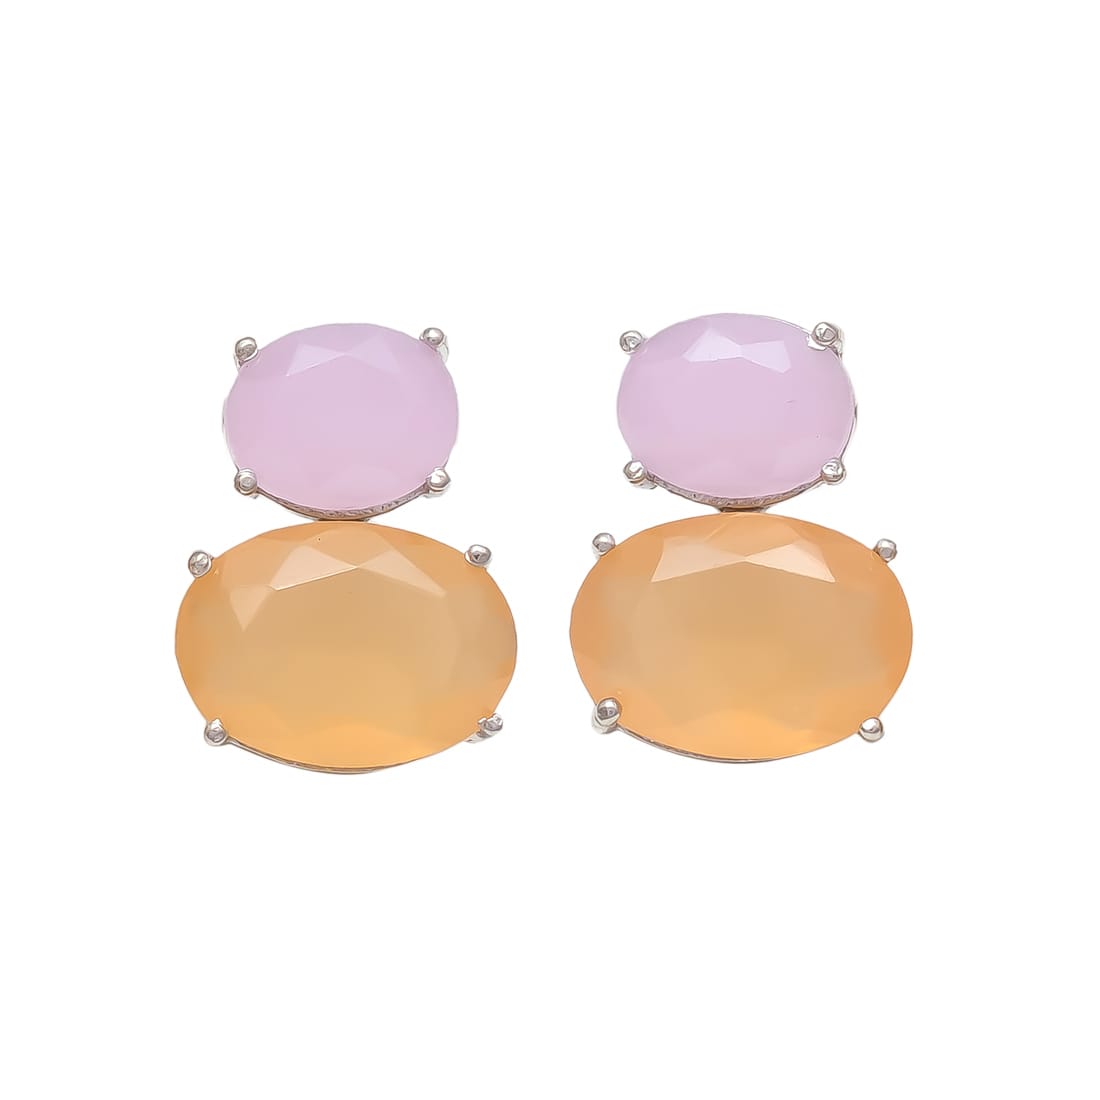 Melange Mia Sterling Silver Bubble Earrings - Peach & Rose Chalcedony Hydro